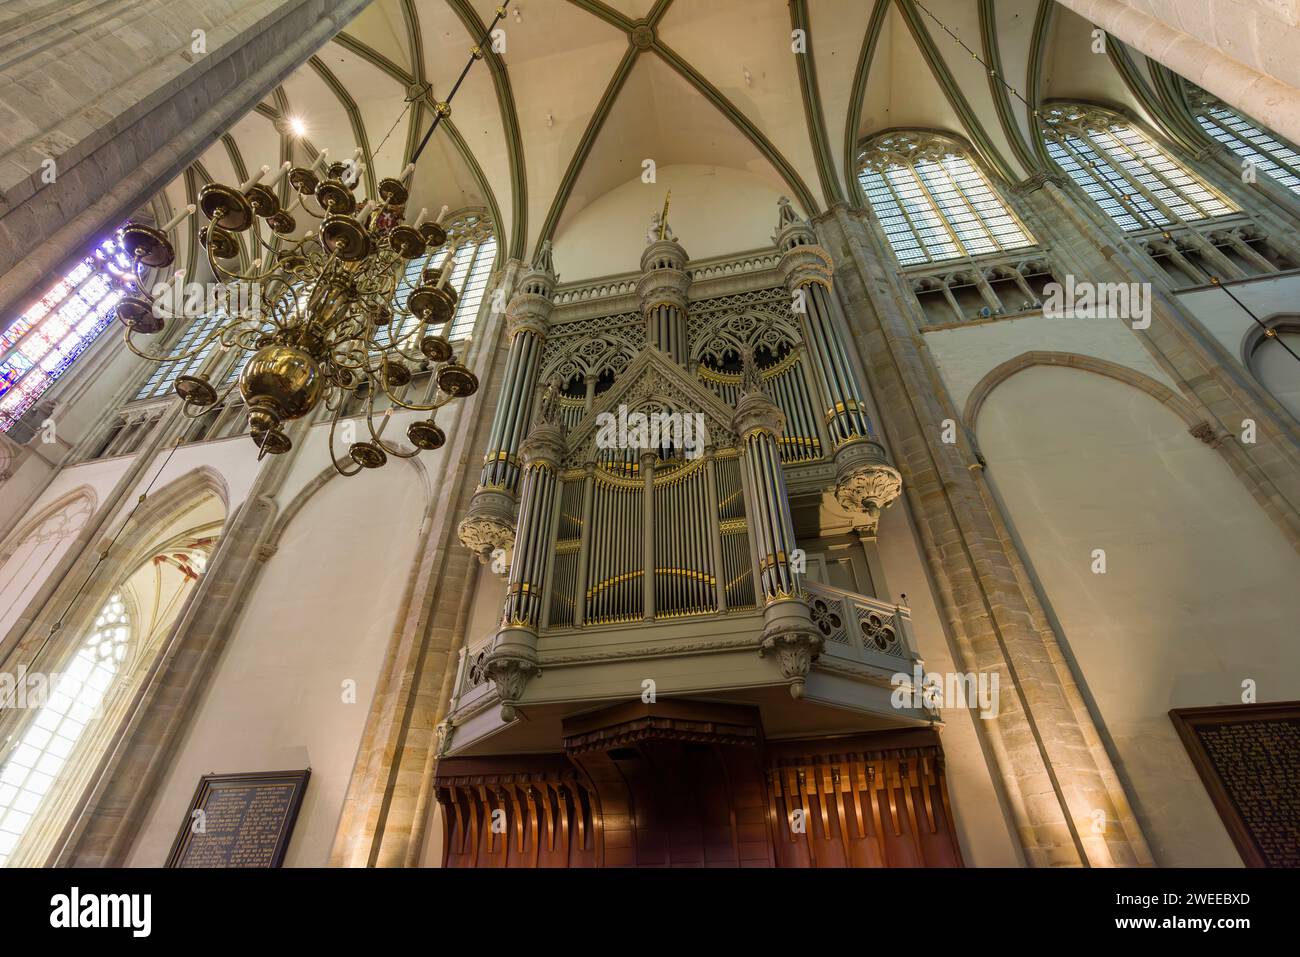 L'orgue à tuyaux à l'intérieur de la cathédrale Saint-Martin dans le centre historique d'Utrecht, pays-Bas, Europe. Banque D'Images